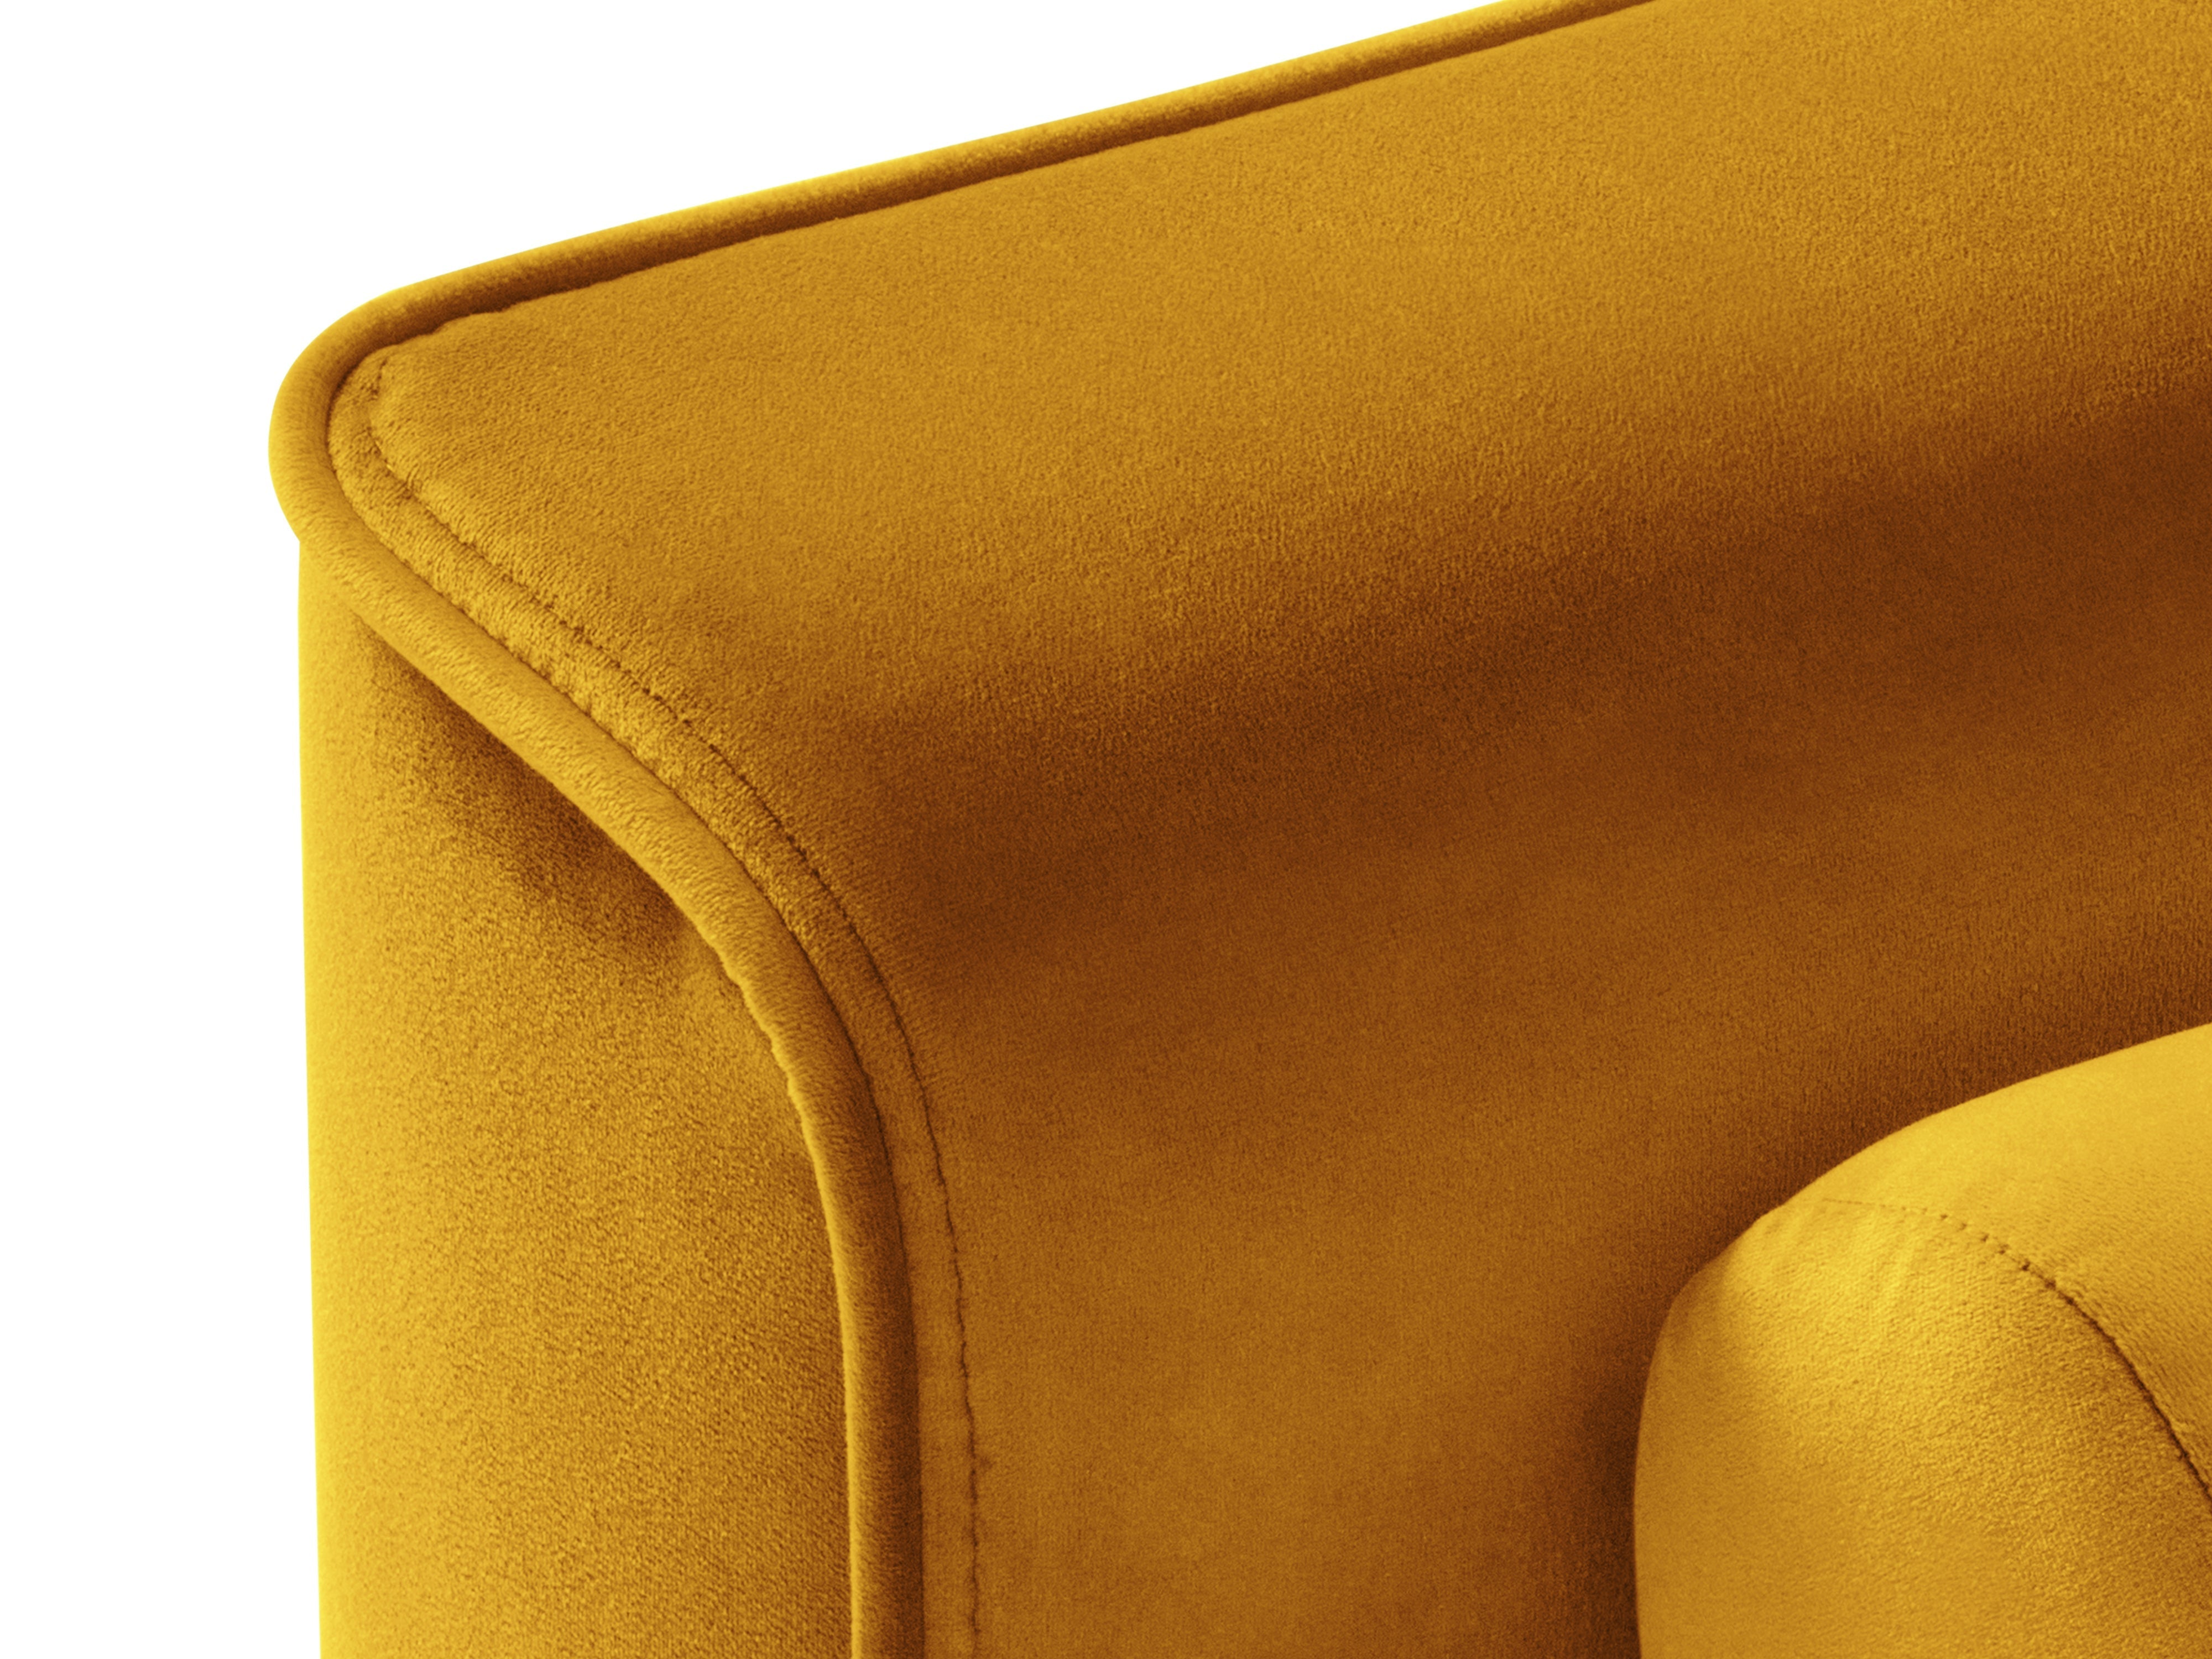 A corner with velvet armrests